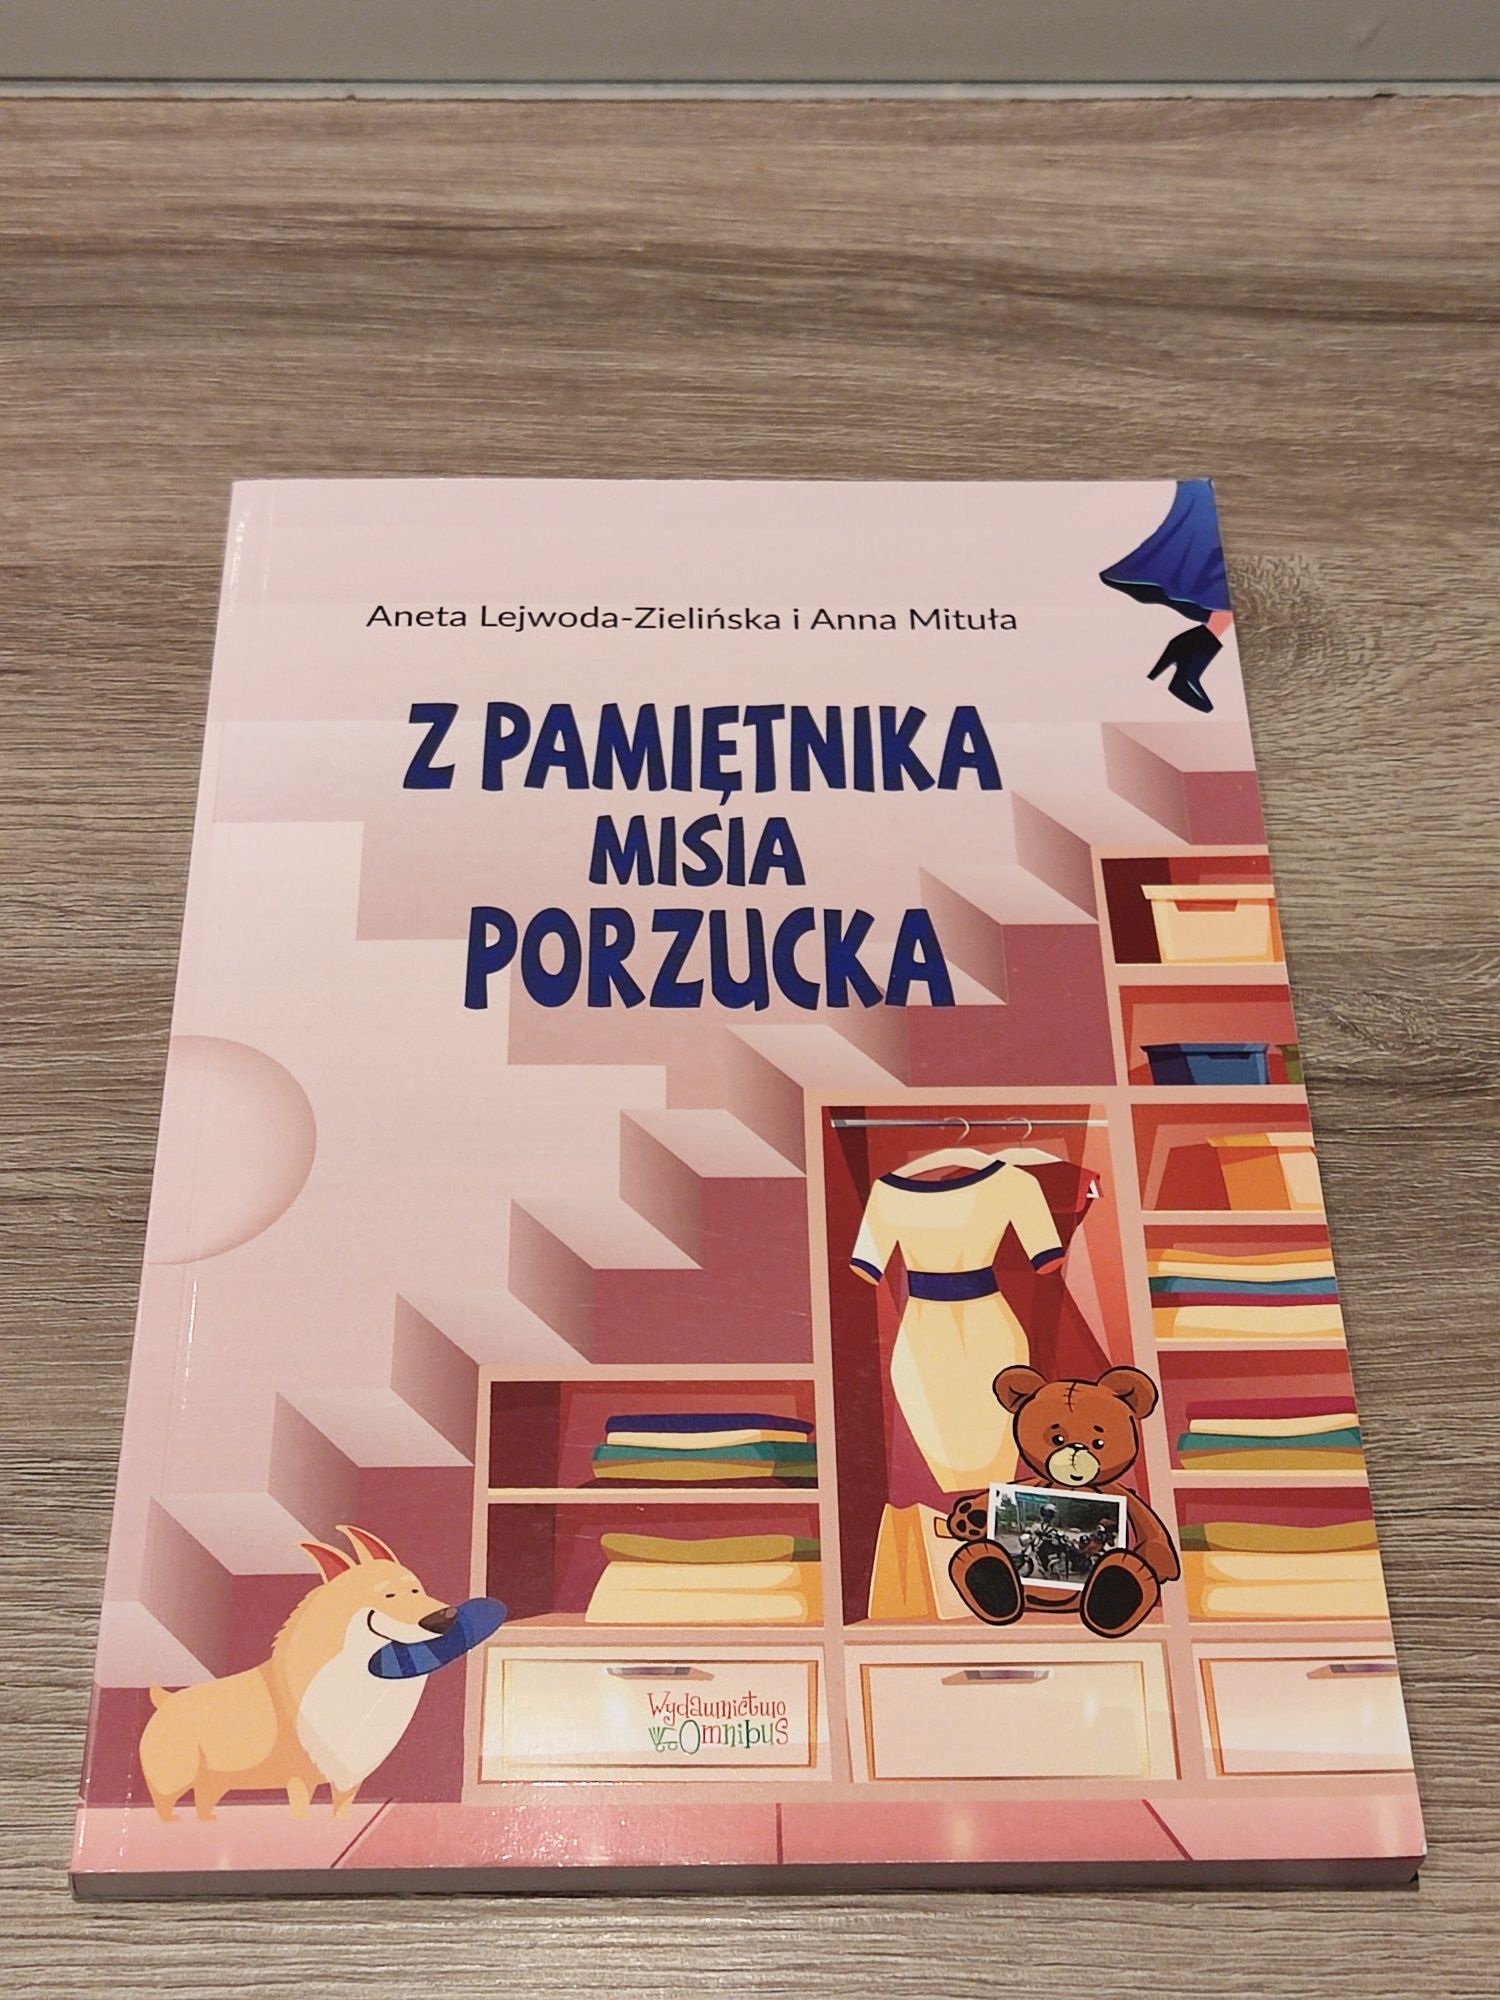 Z pamiętnika misia Porzucka książka dla dzieci